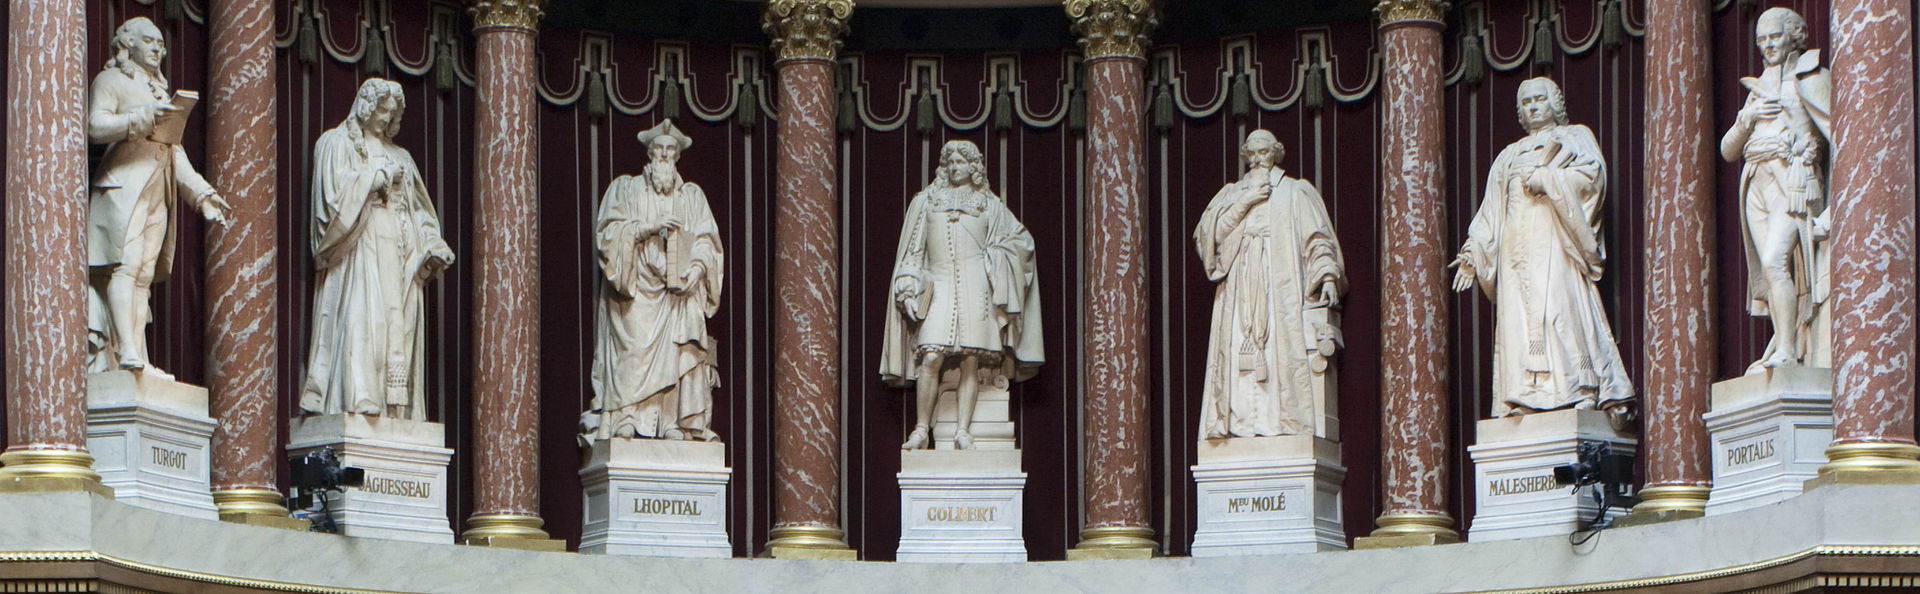 พระราชวังลักเซมบูร์ก-รูปปั้นบรรดานักคิดของฝรั่งเศส